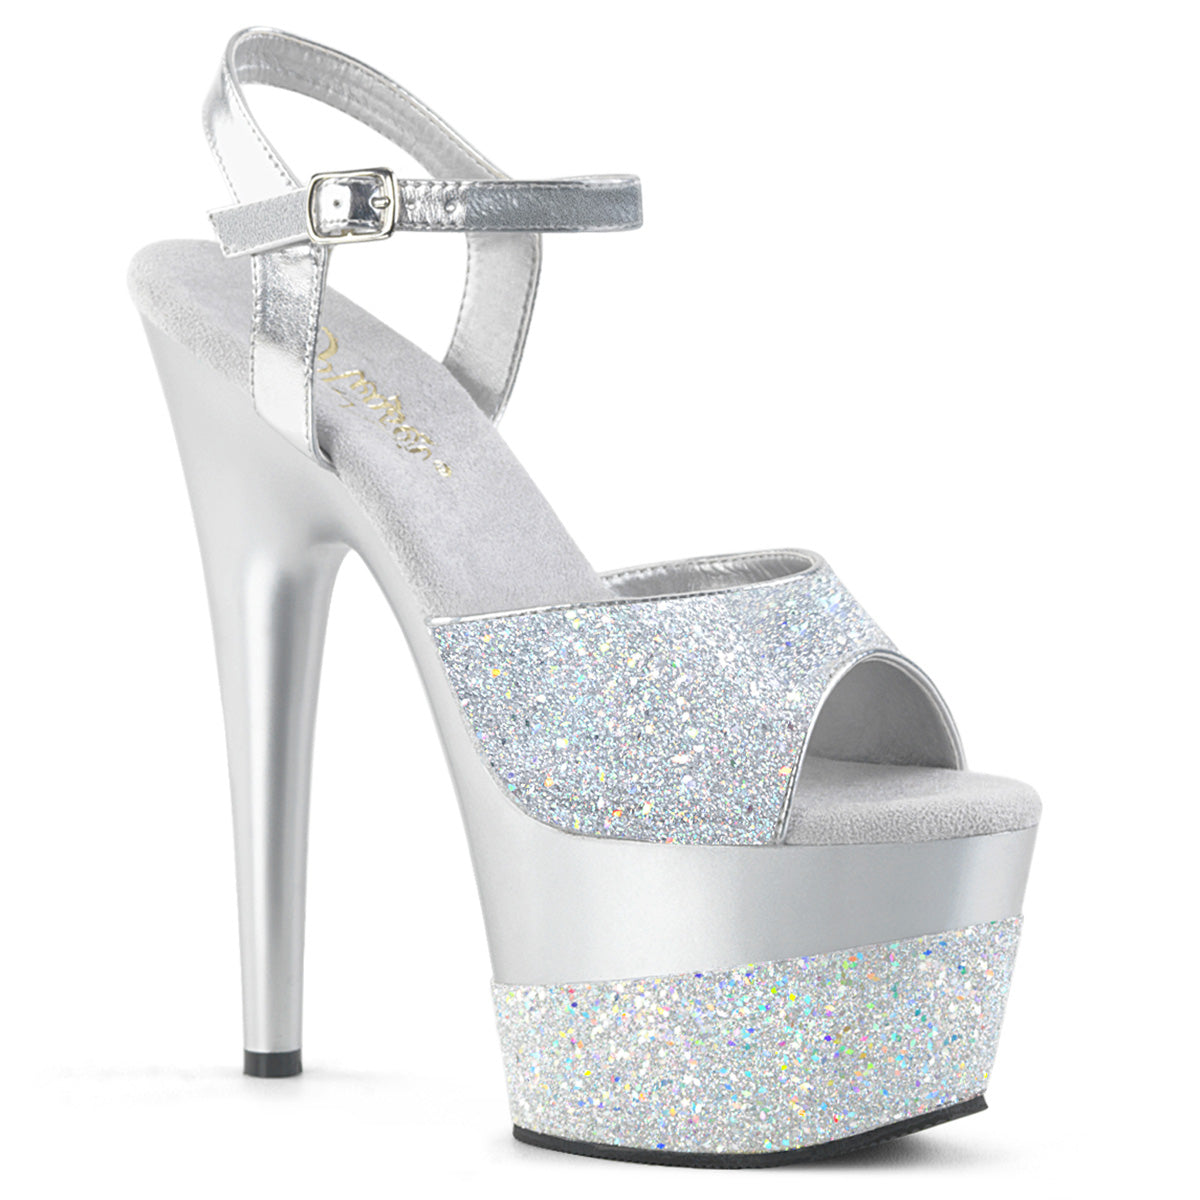 ADORE-709-2G 7" Heel Silver Glitter Stripper Shoes